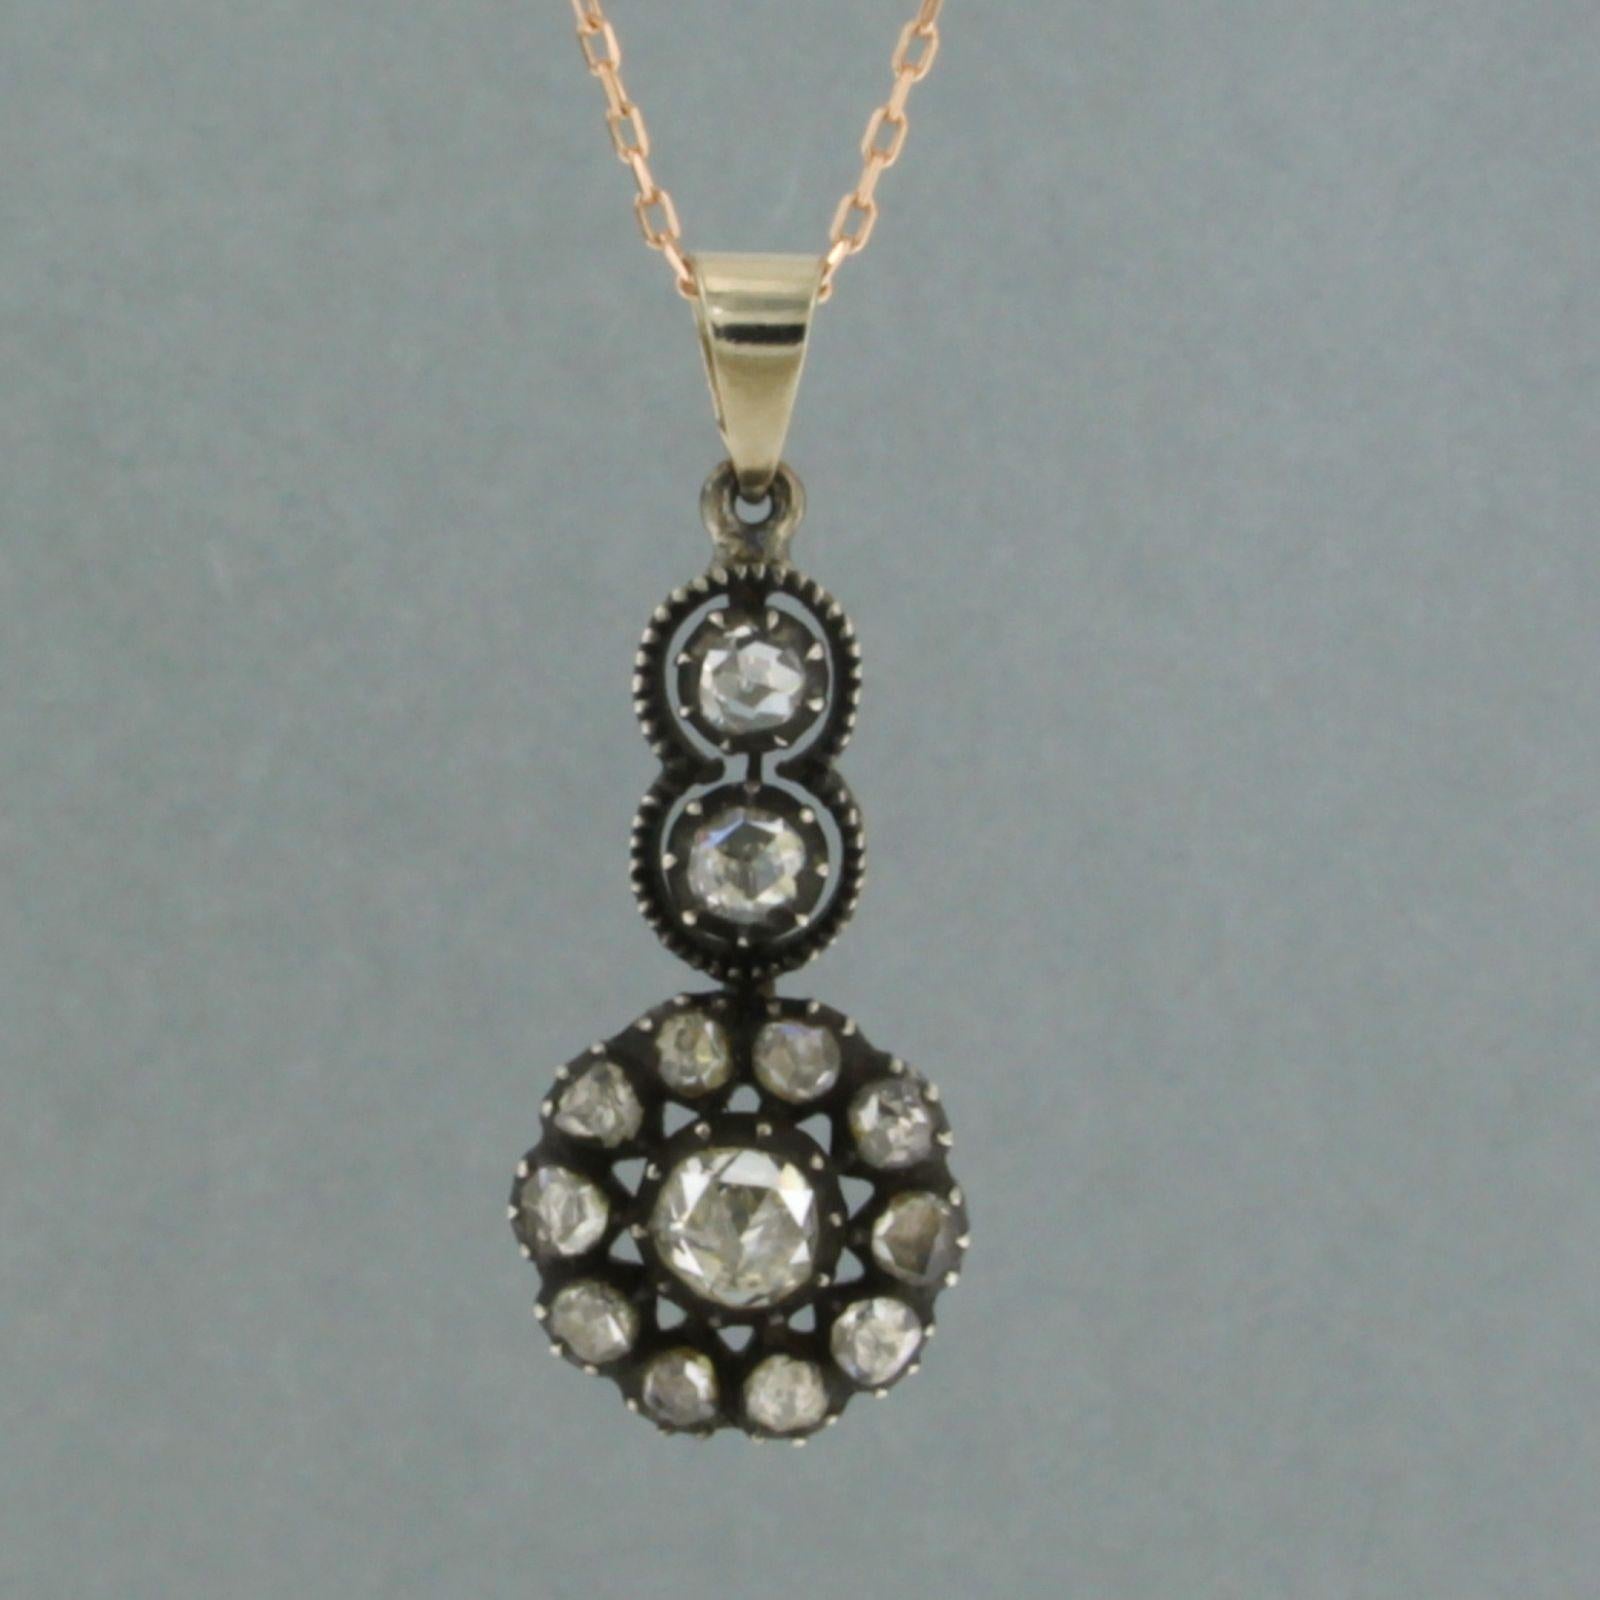 Halskette aus 14 Karat Roségold mit einem Anhänger aus Gold und Silber, besetzt mit rosa Diamanten. 0,50ct - G/H - SI - 45 cm 45 cm lang

detaillierte Beschreibung:

die Länge der Halskette ist 45 cm lang und 0,7 mm breit, die Halskette ist